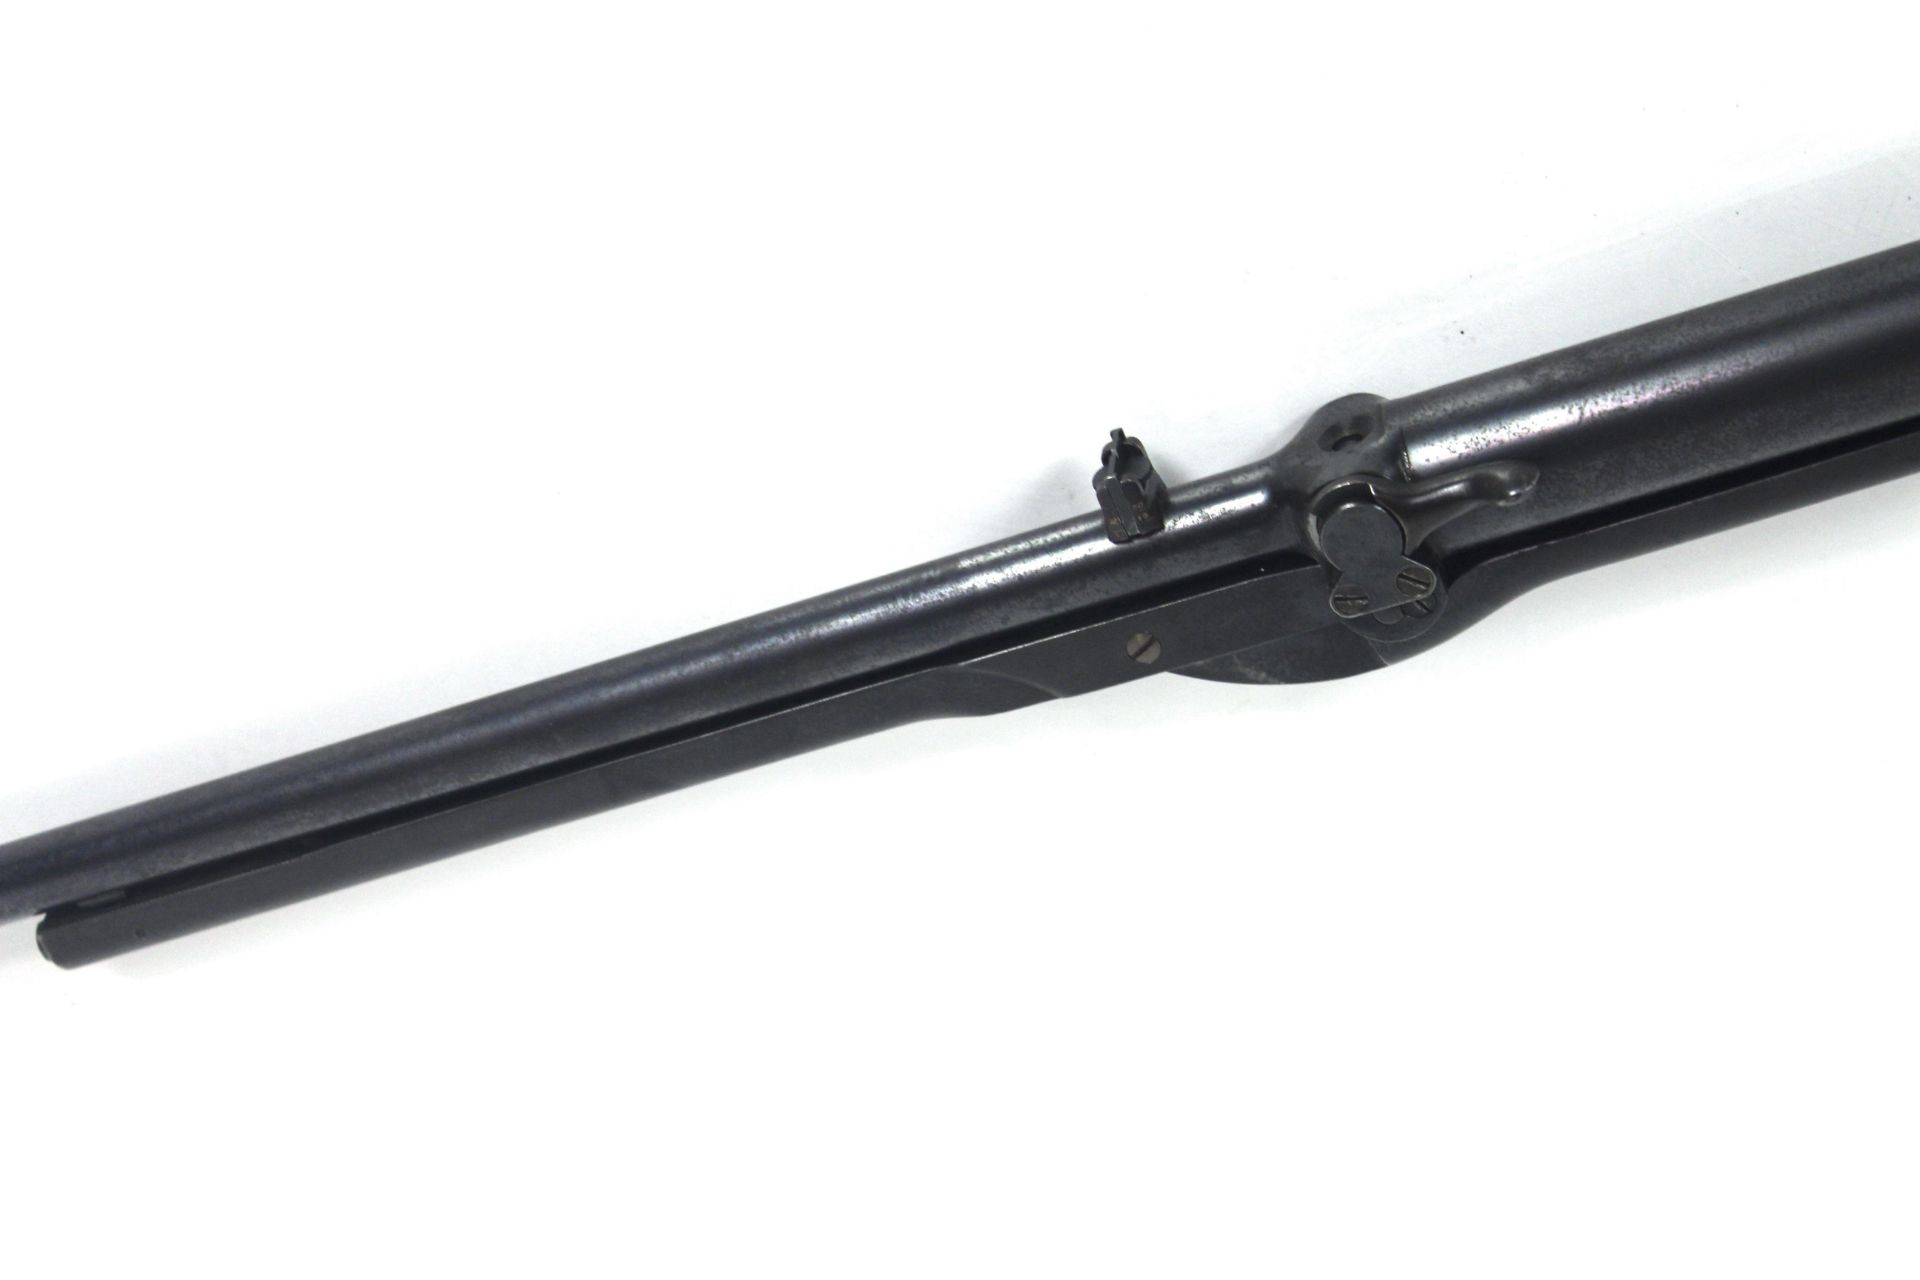 A B.S.A. Standard air rifle, Ser. No. S-23293 circ - Image 9 of 13